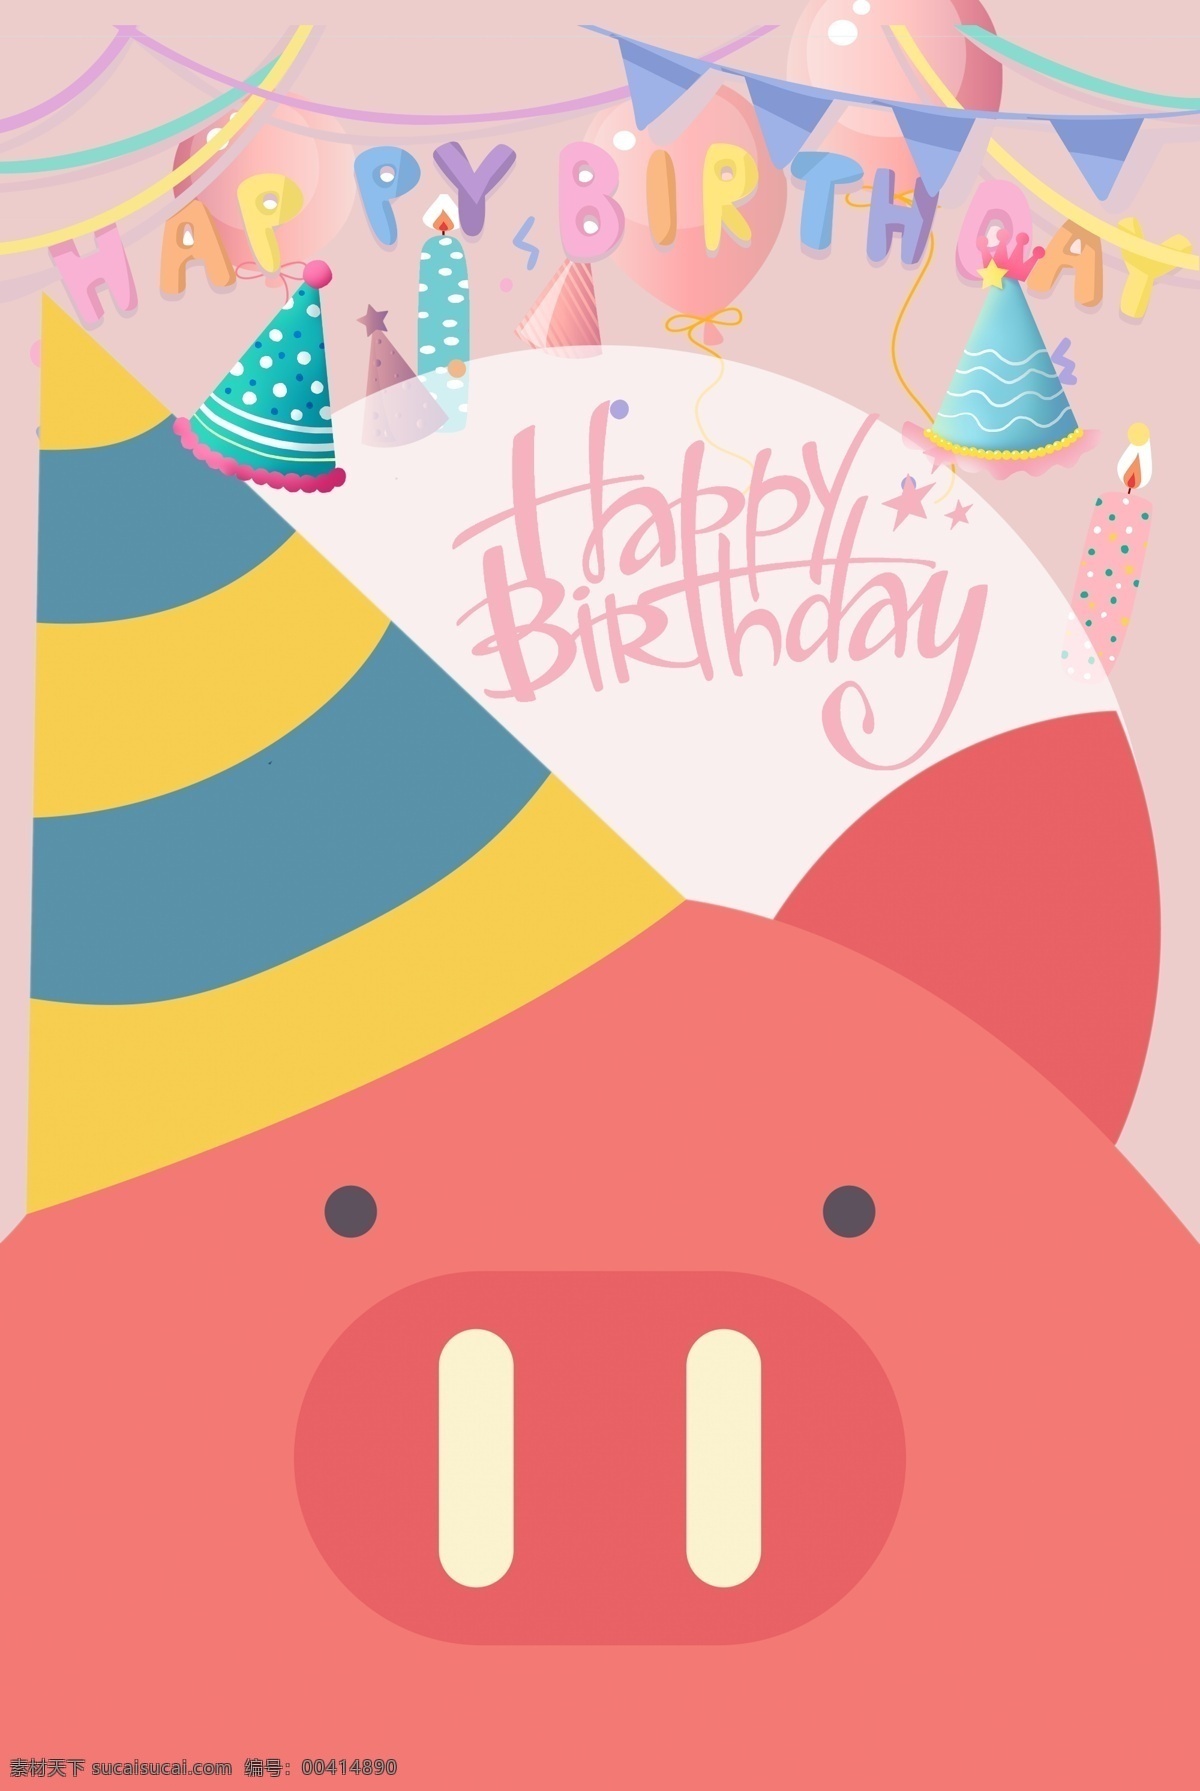 生日贺卡 猪猪 可爱 猪宝宝 生日 贺卡 分层 形象设计 文化艺术 节日庆祝